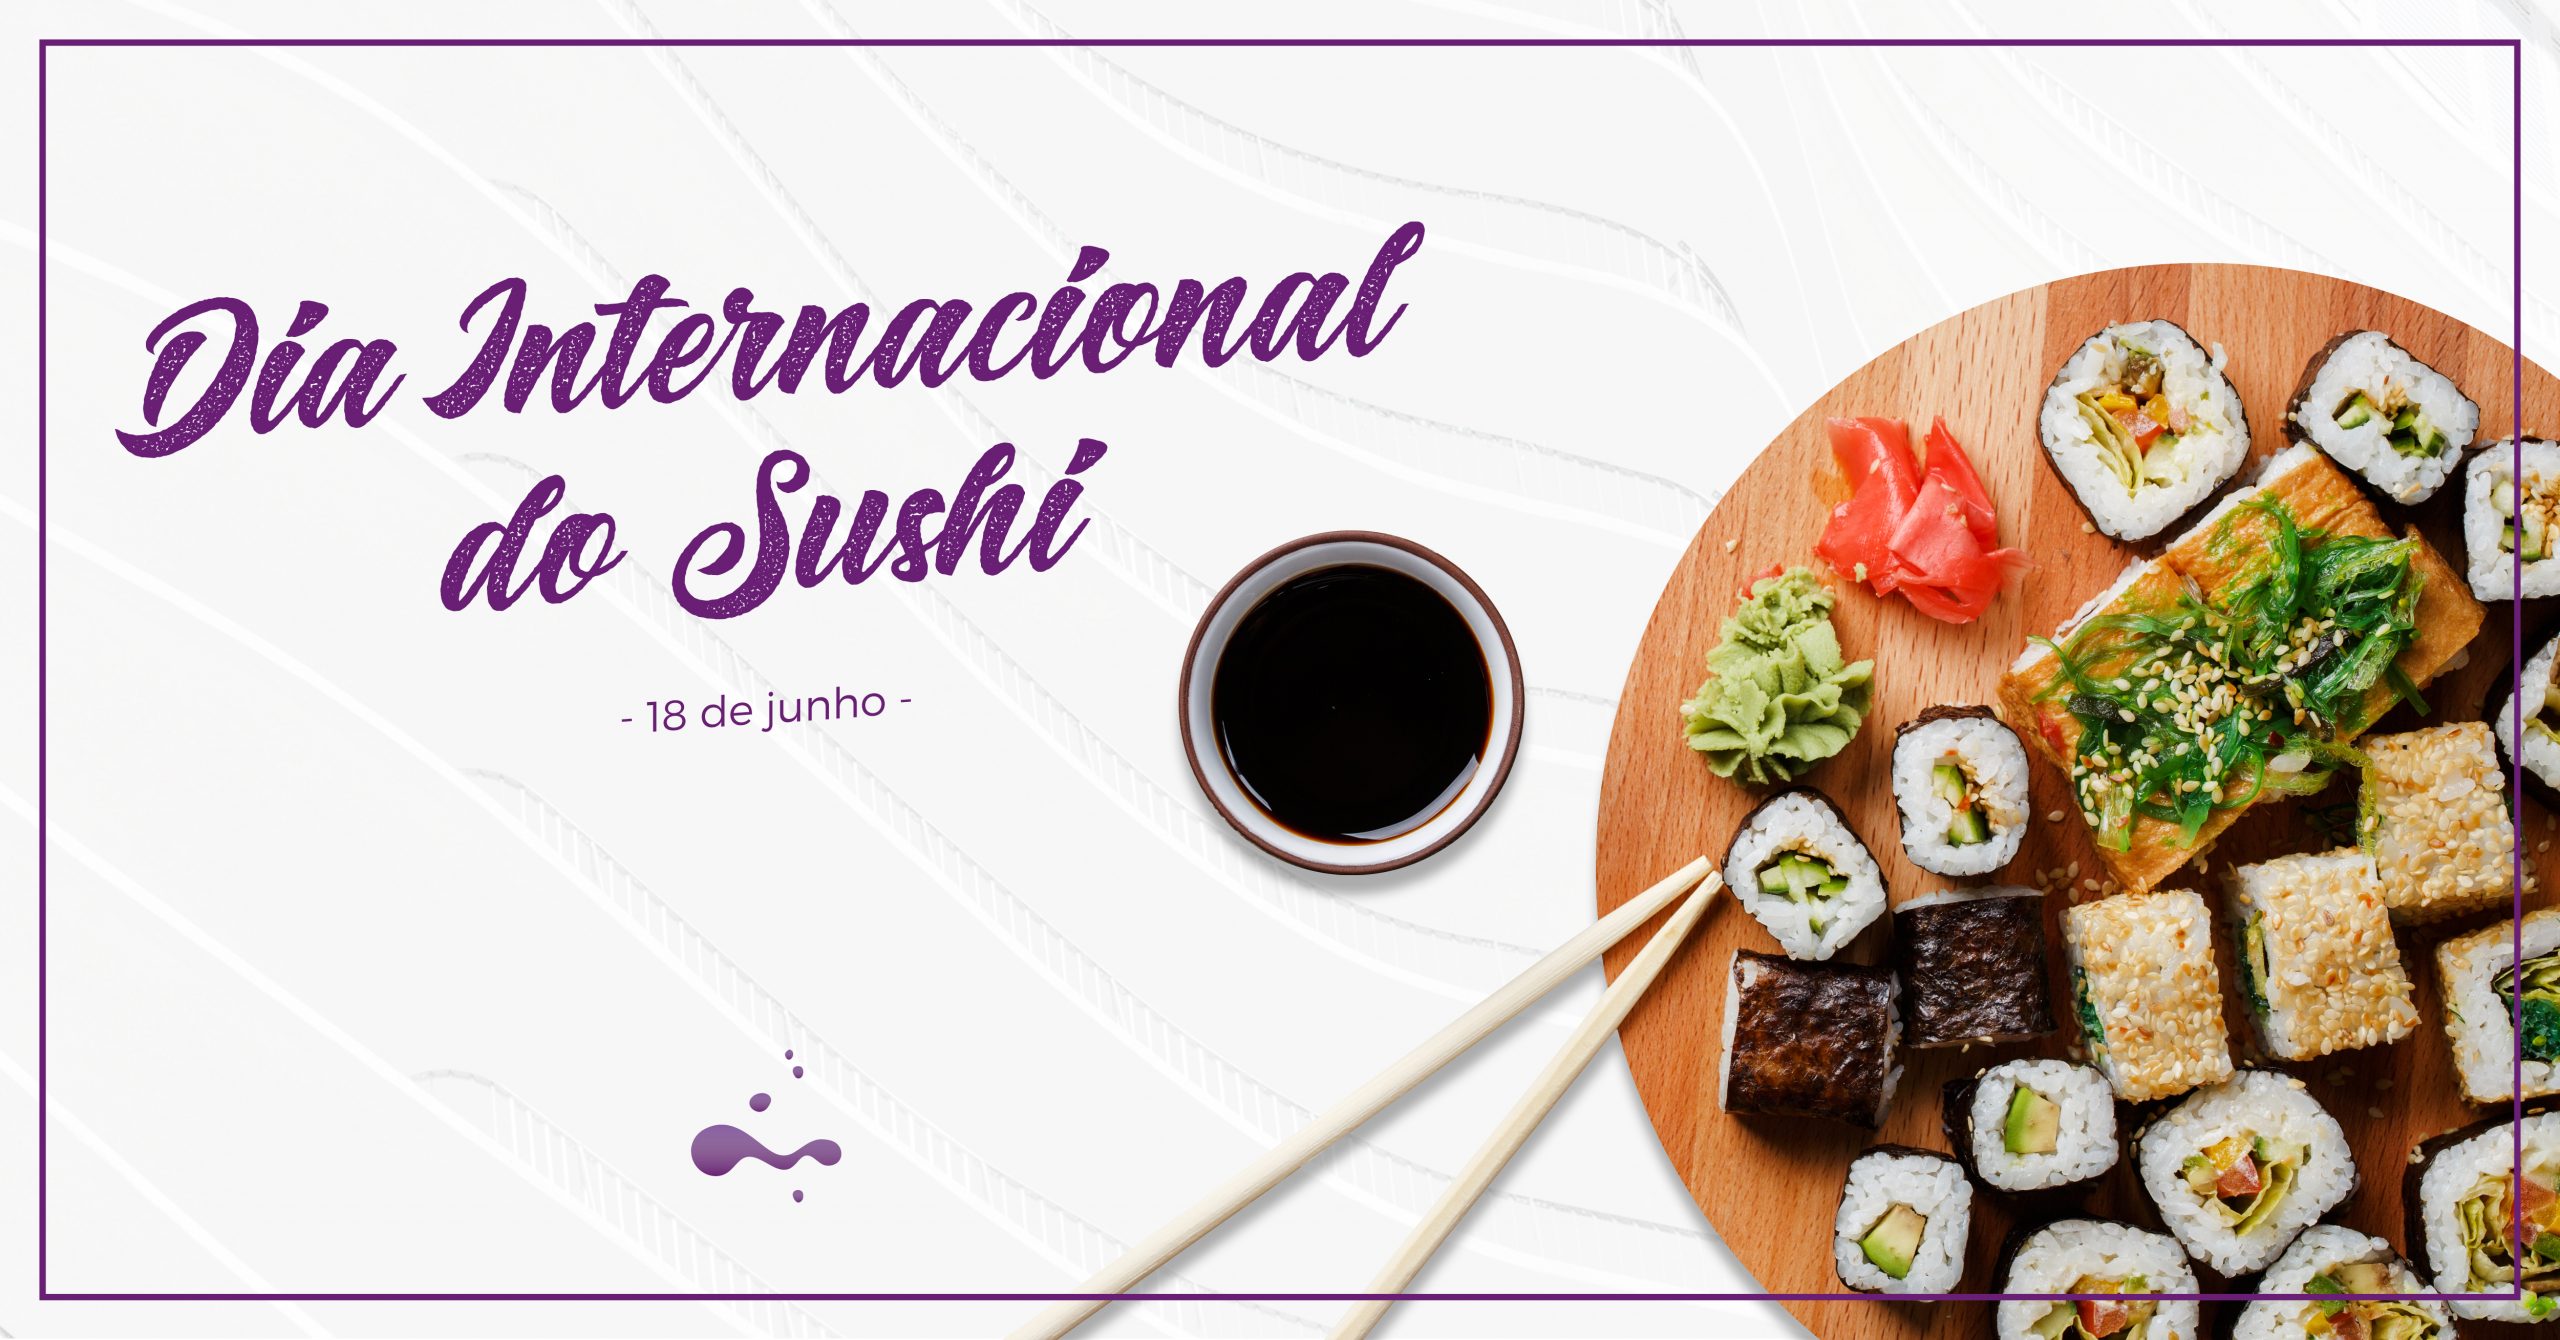 5 Dicas para uma refeição de sushi saudável